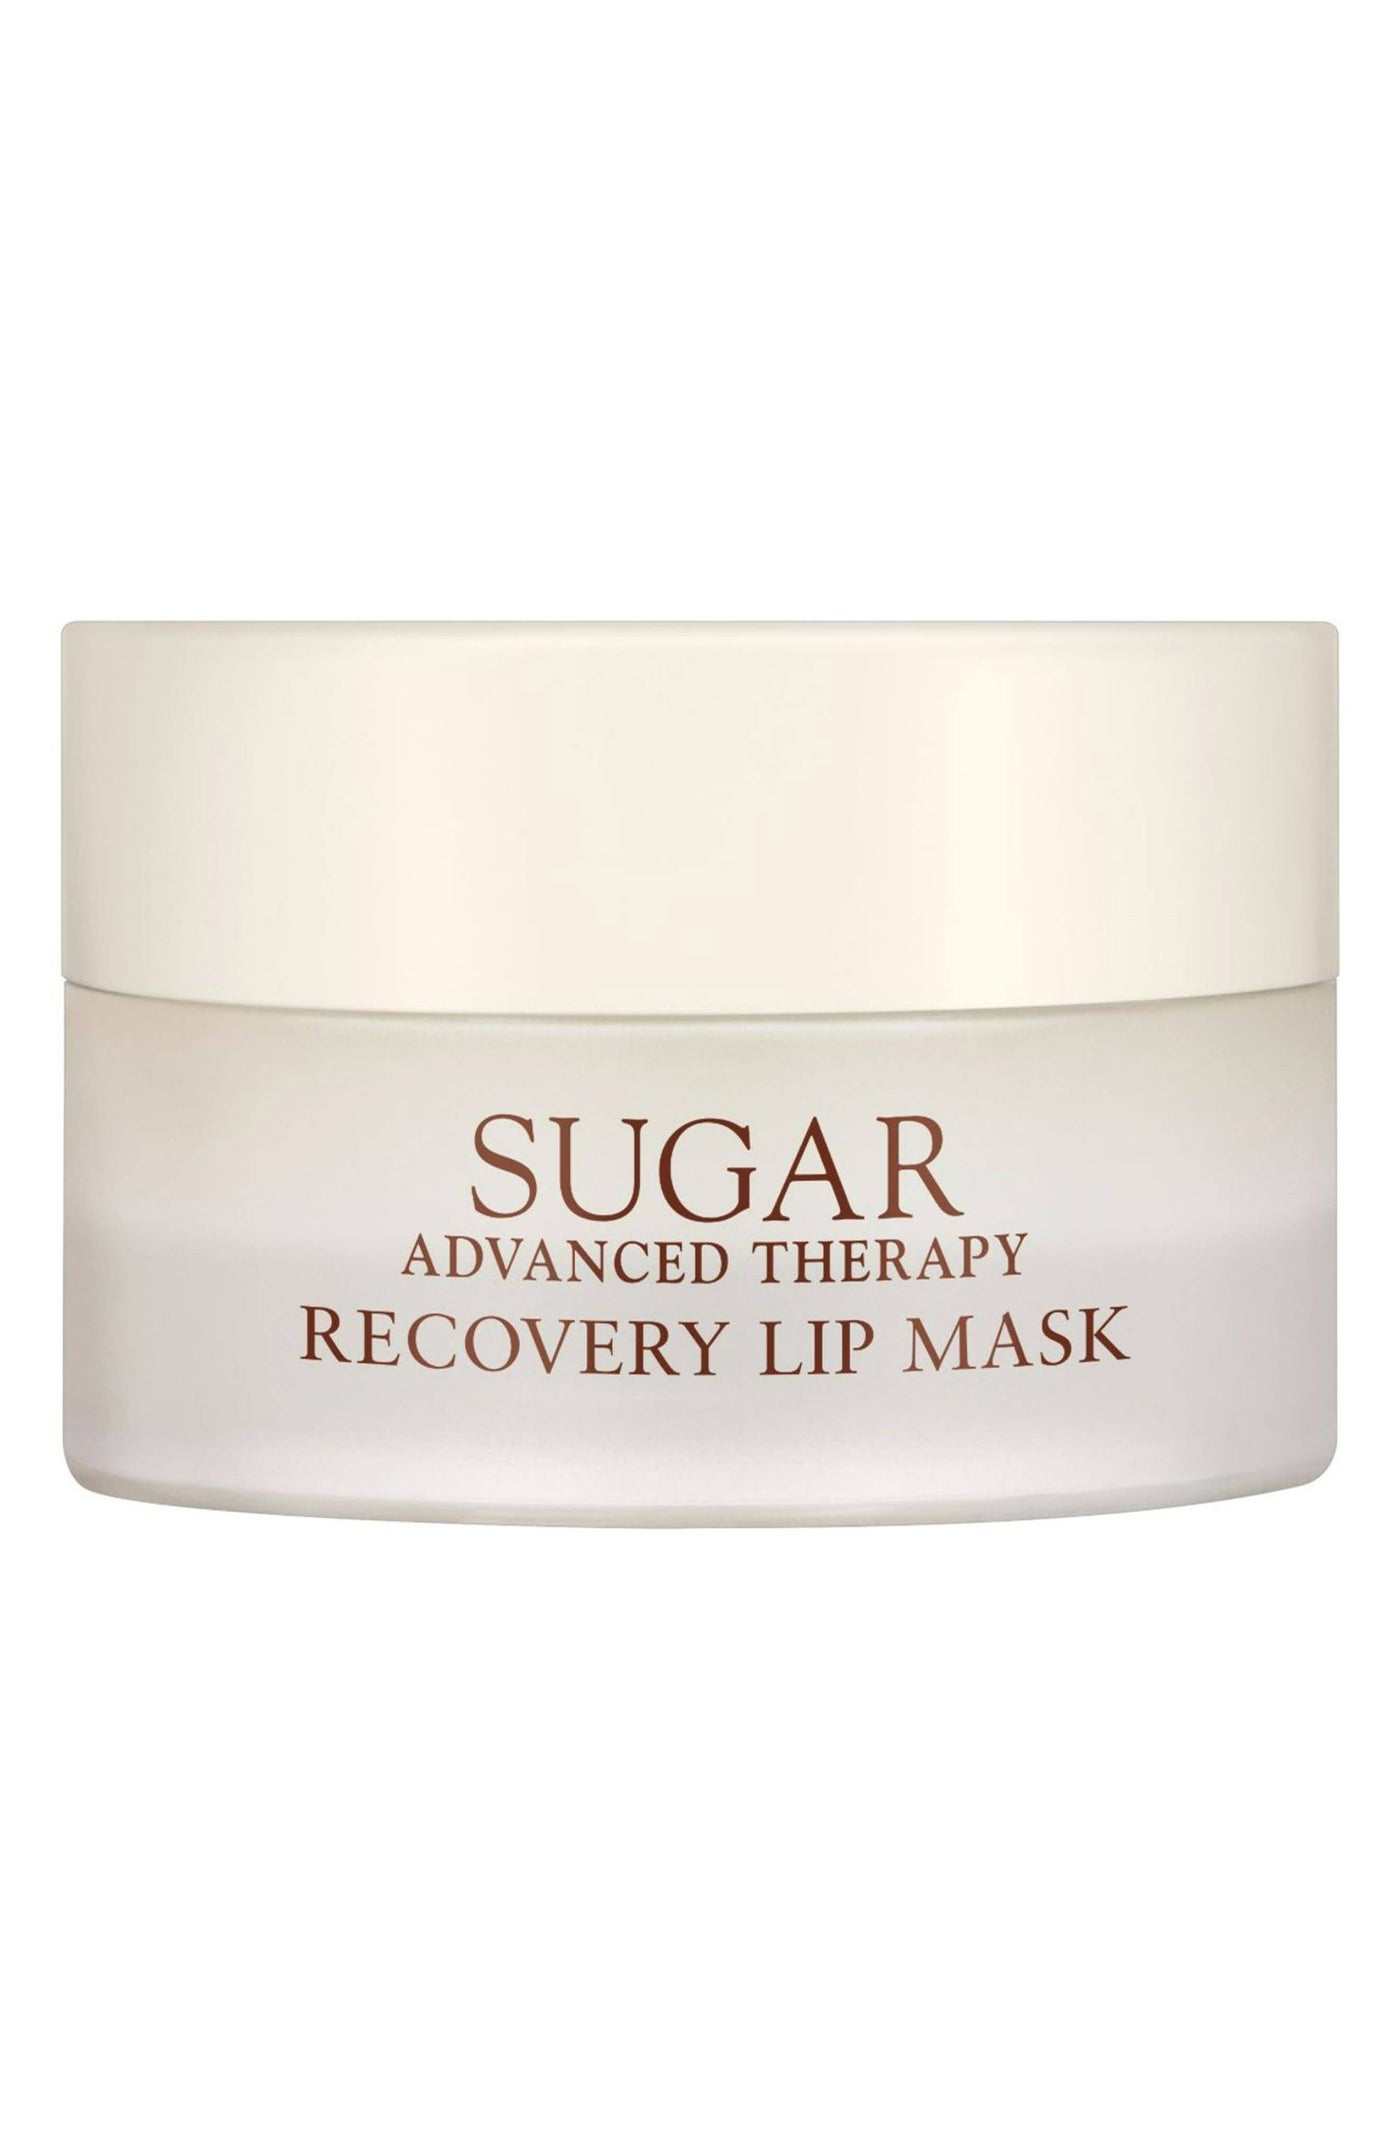 Sugar Advanced Therapy Lip Mask 10g